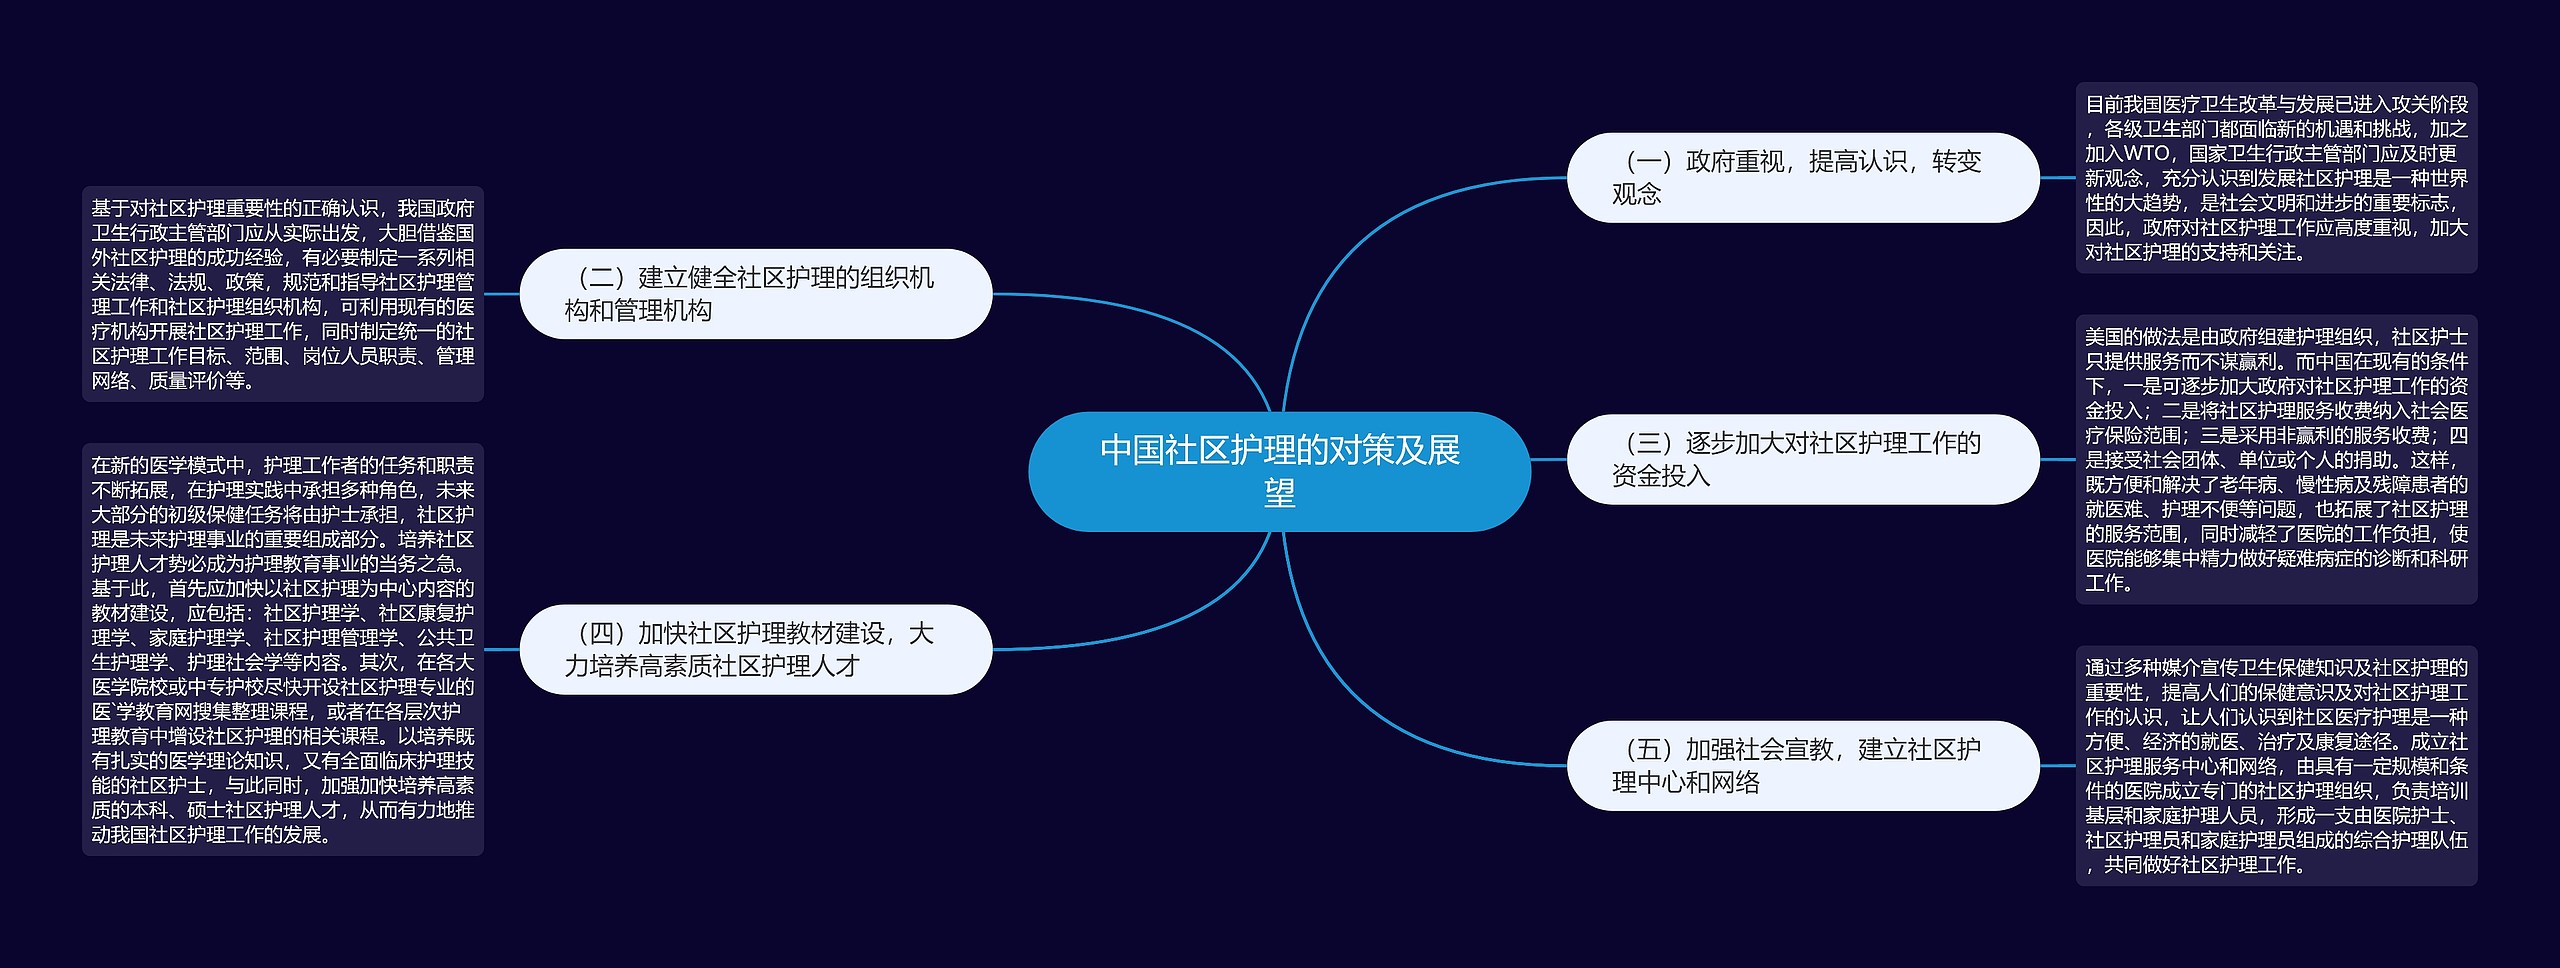 中国社区护理的对策及展望思维导图